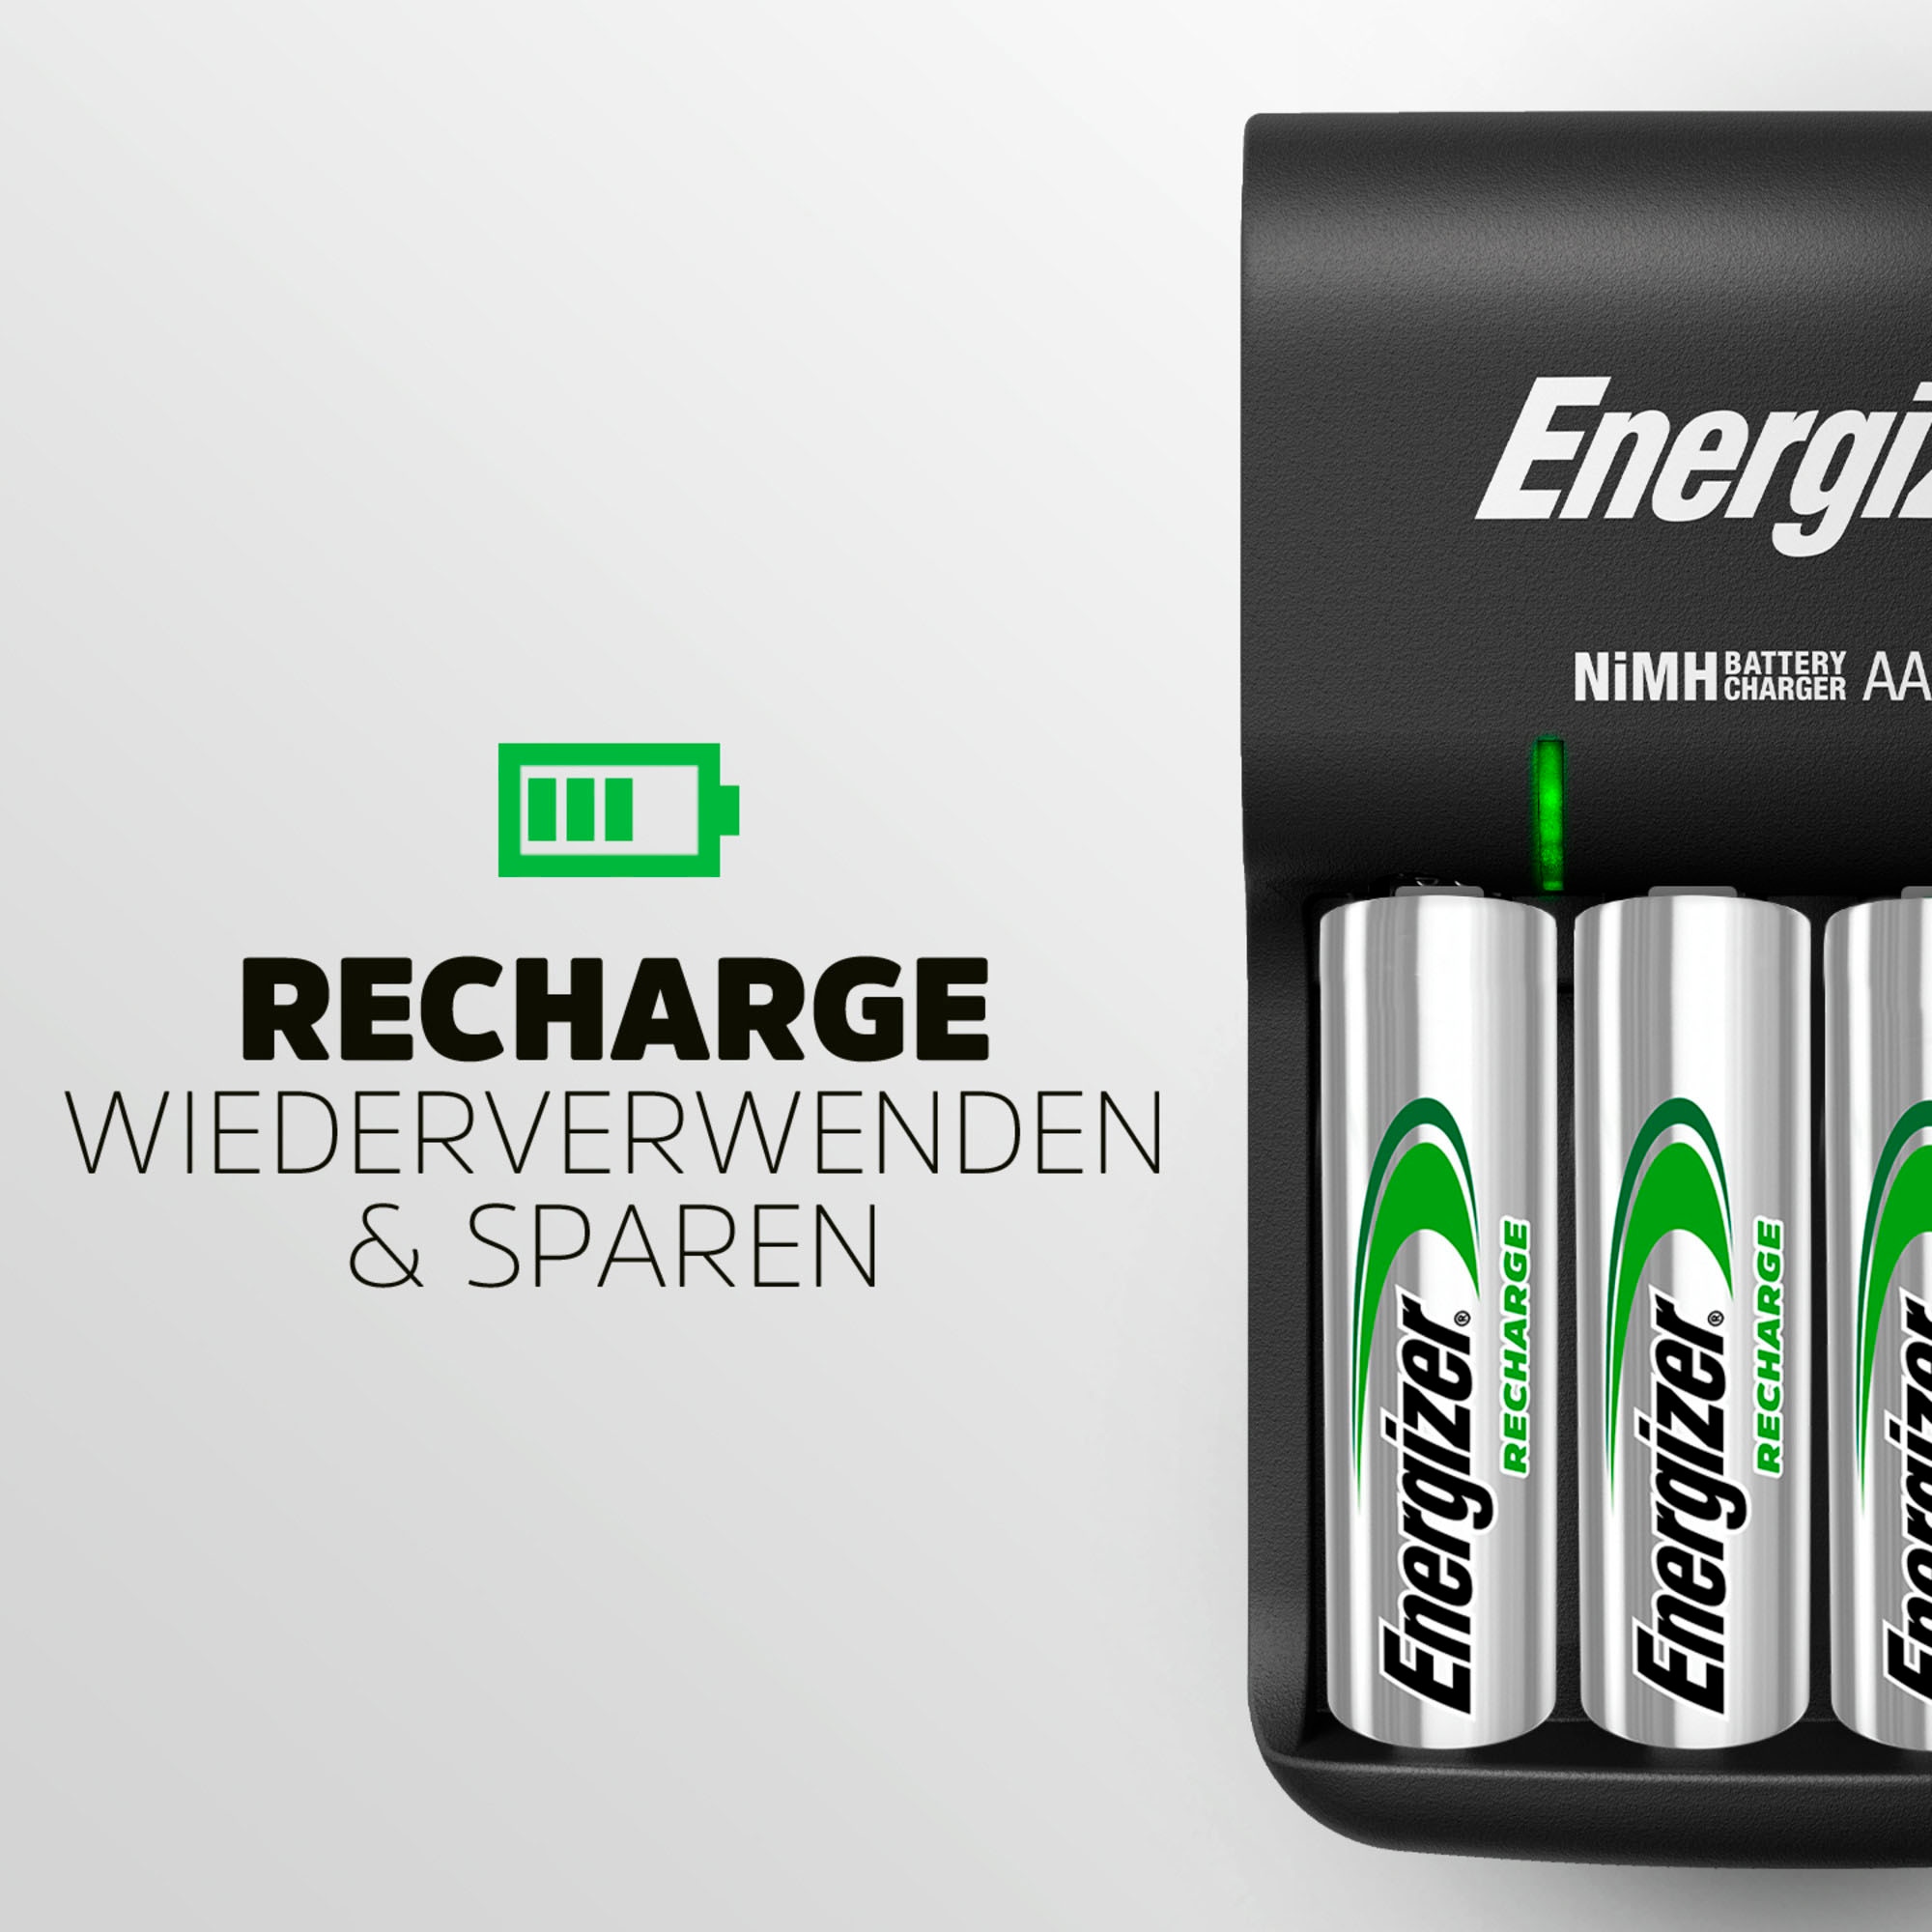 Energizer Batterie-Ladegerät »Base Charger + 4AA 1300 mAh«, 200 mA